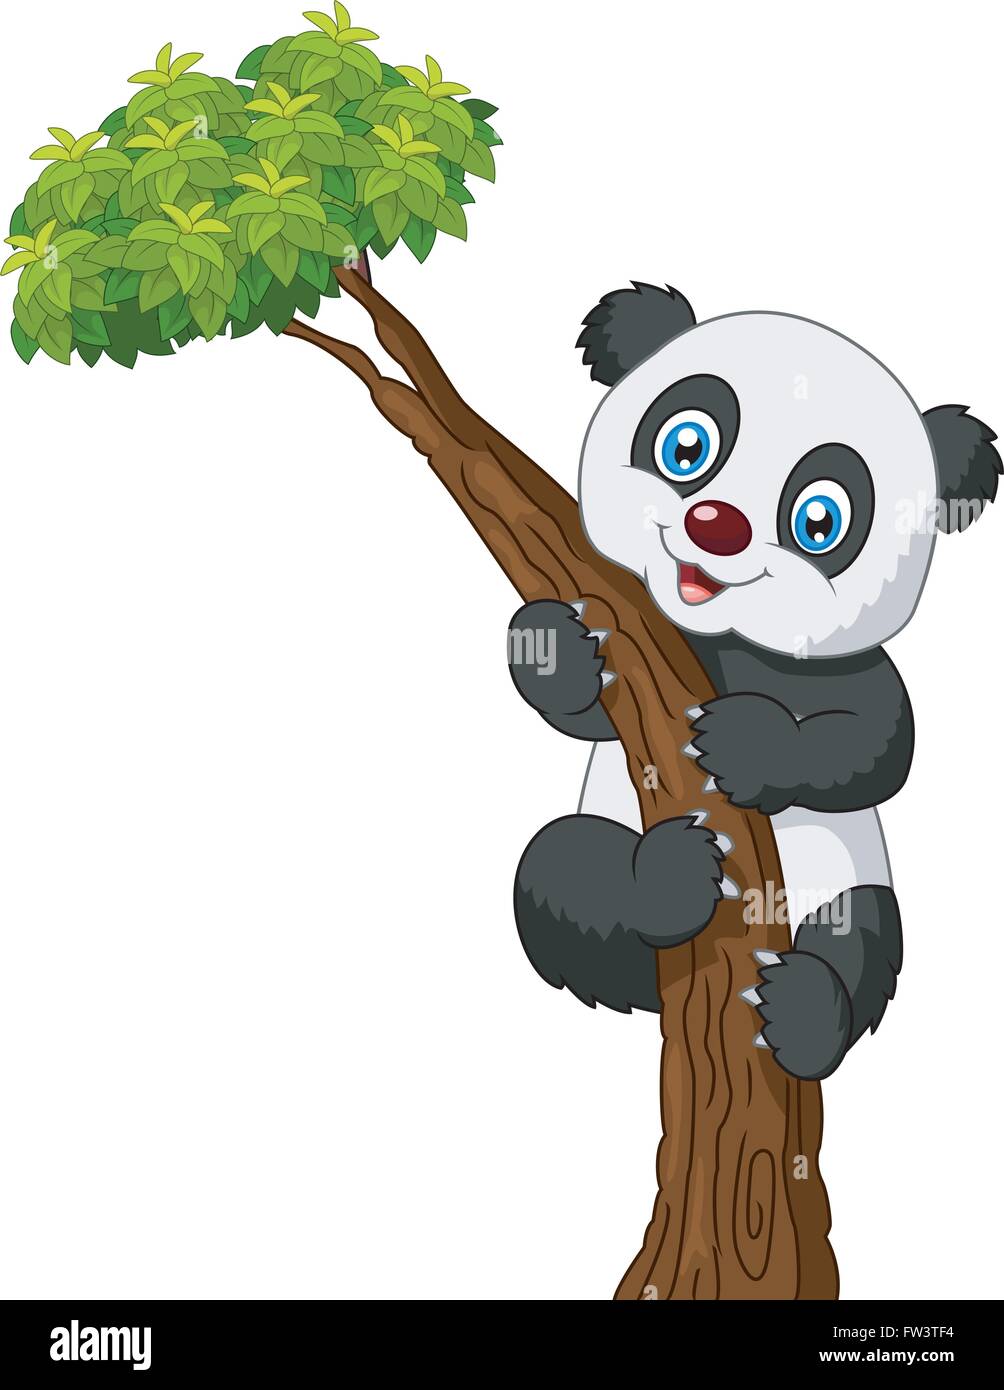 Cute panda cartoon climbing tree Stock Vector Image & Art - Alamy